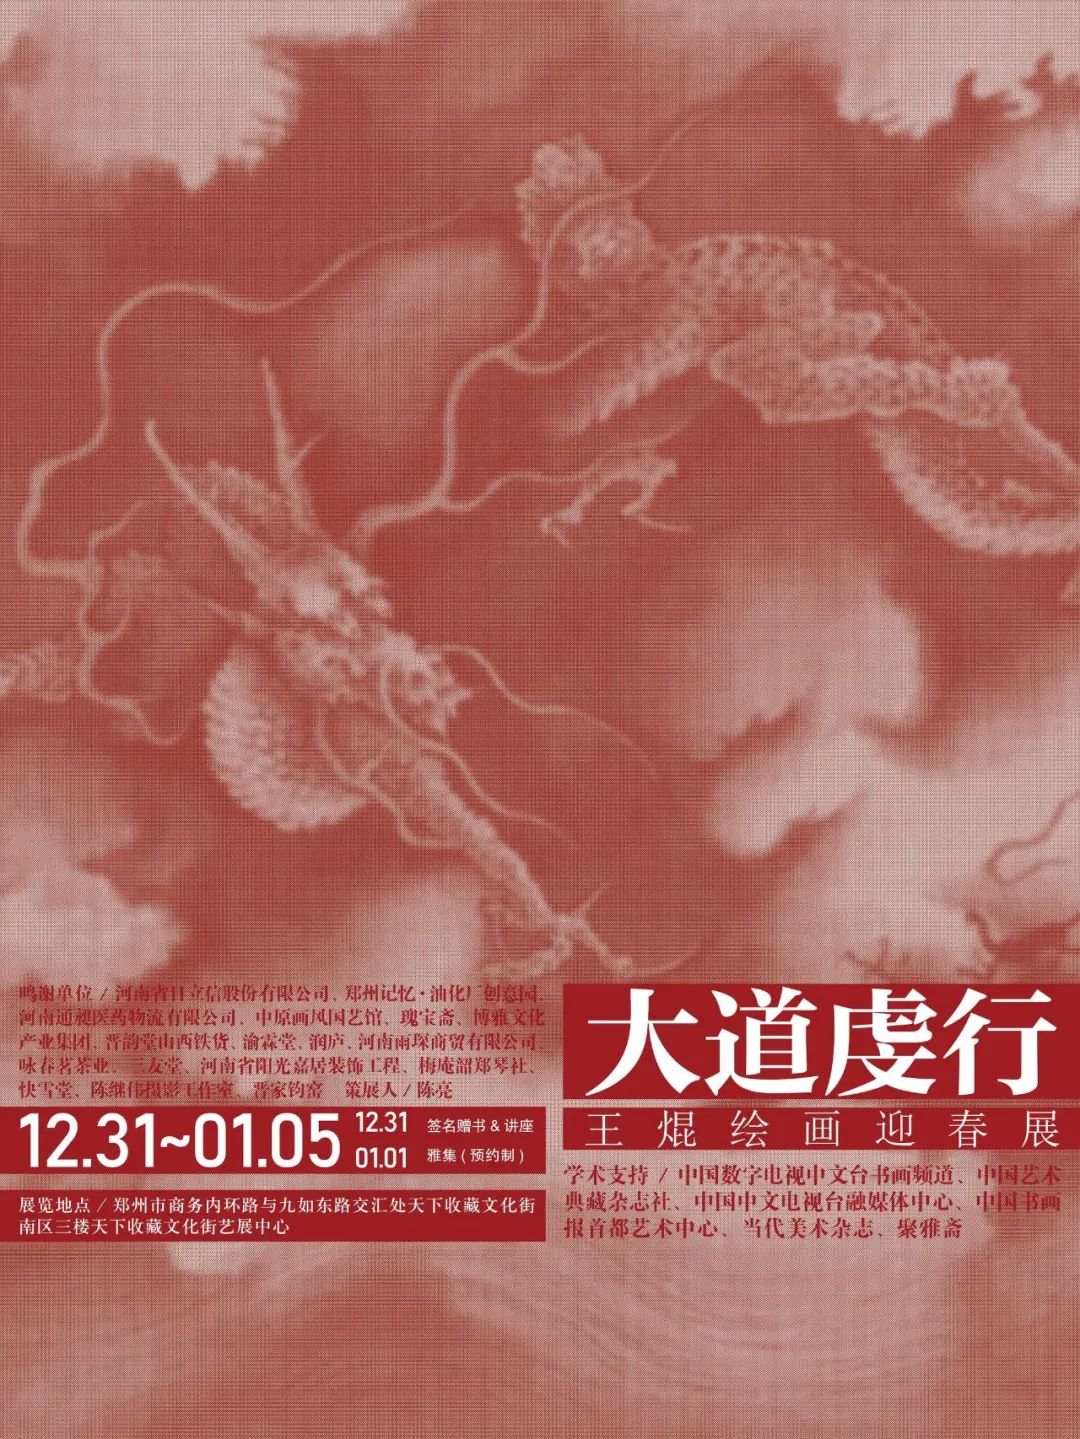 藏·展览丨大道虔行——王焜绘画迎春展(图1)